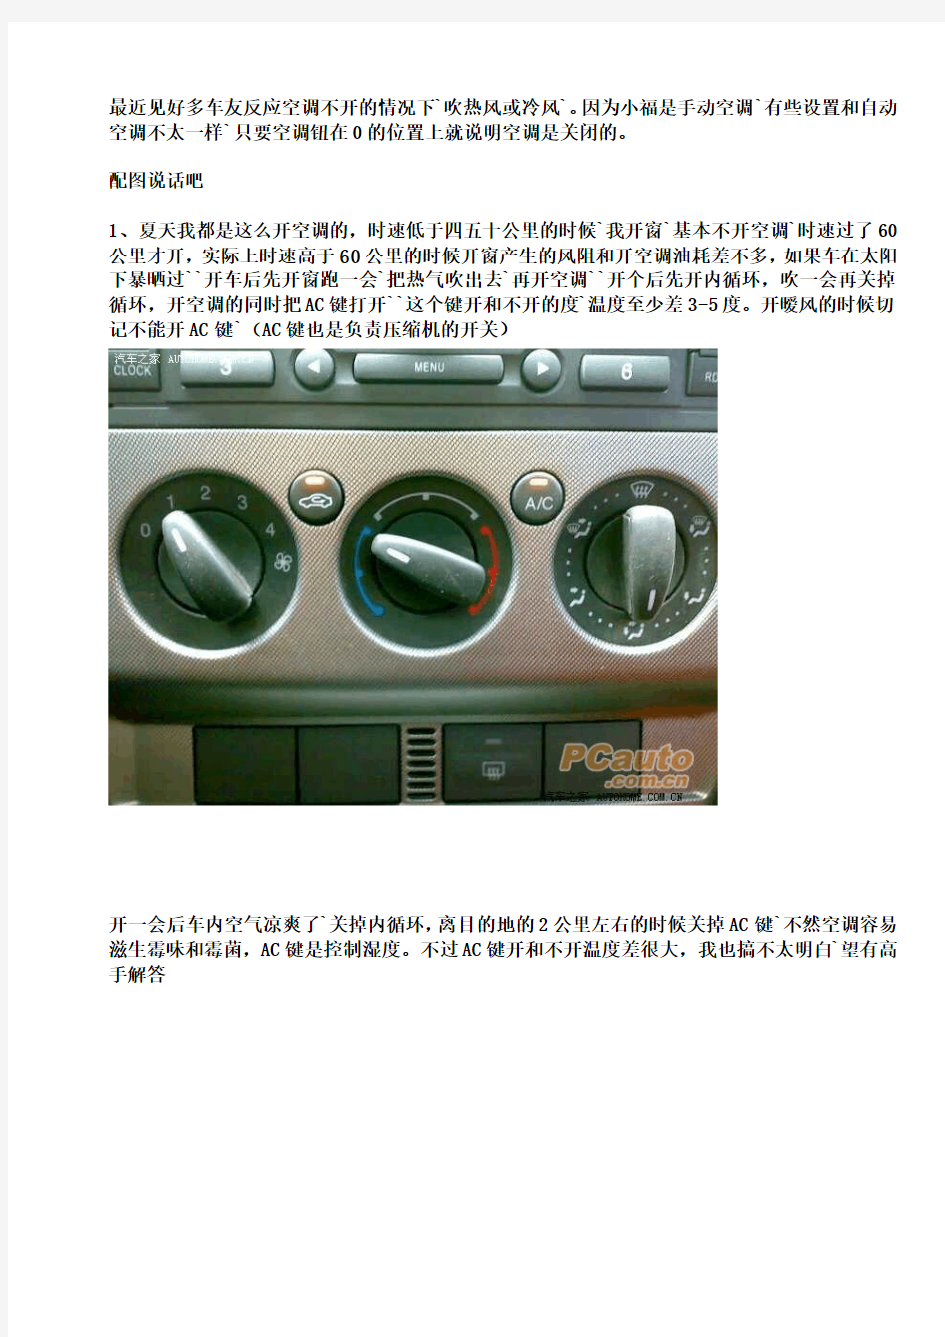 【转】汽车手动式空调的使用方法(福克斯为例)